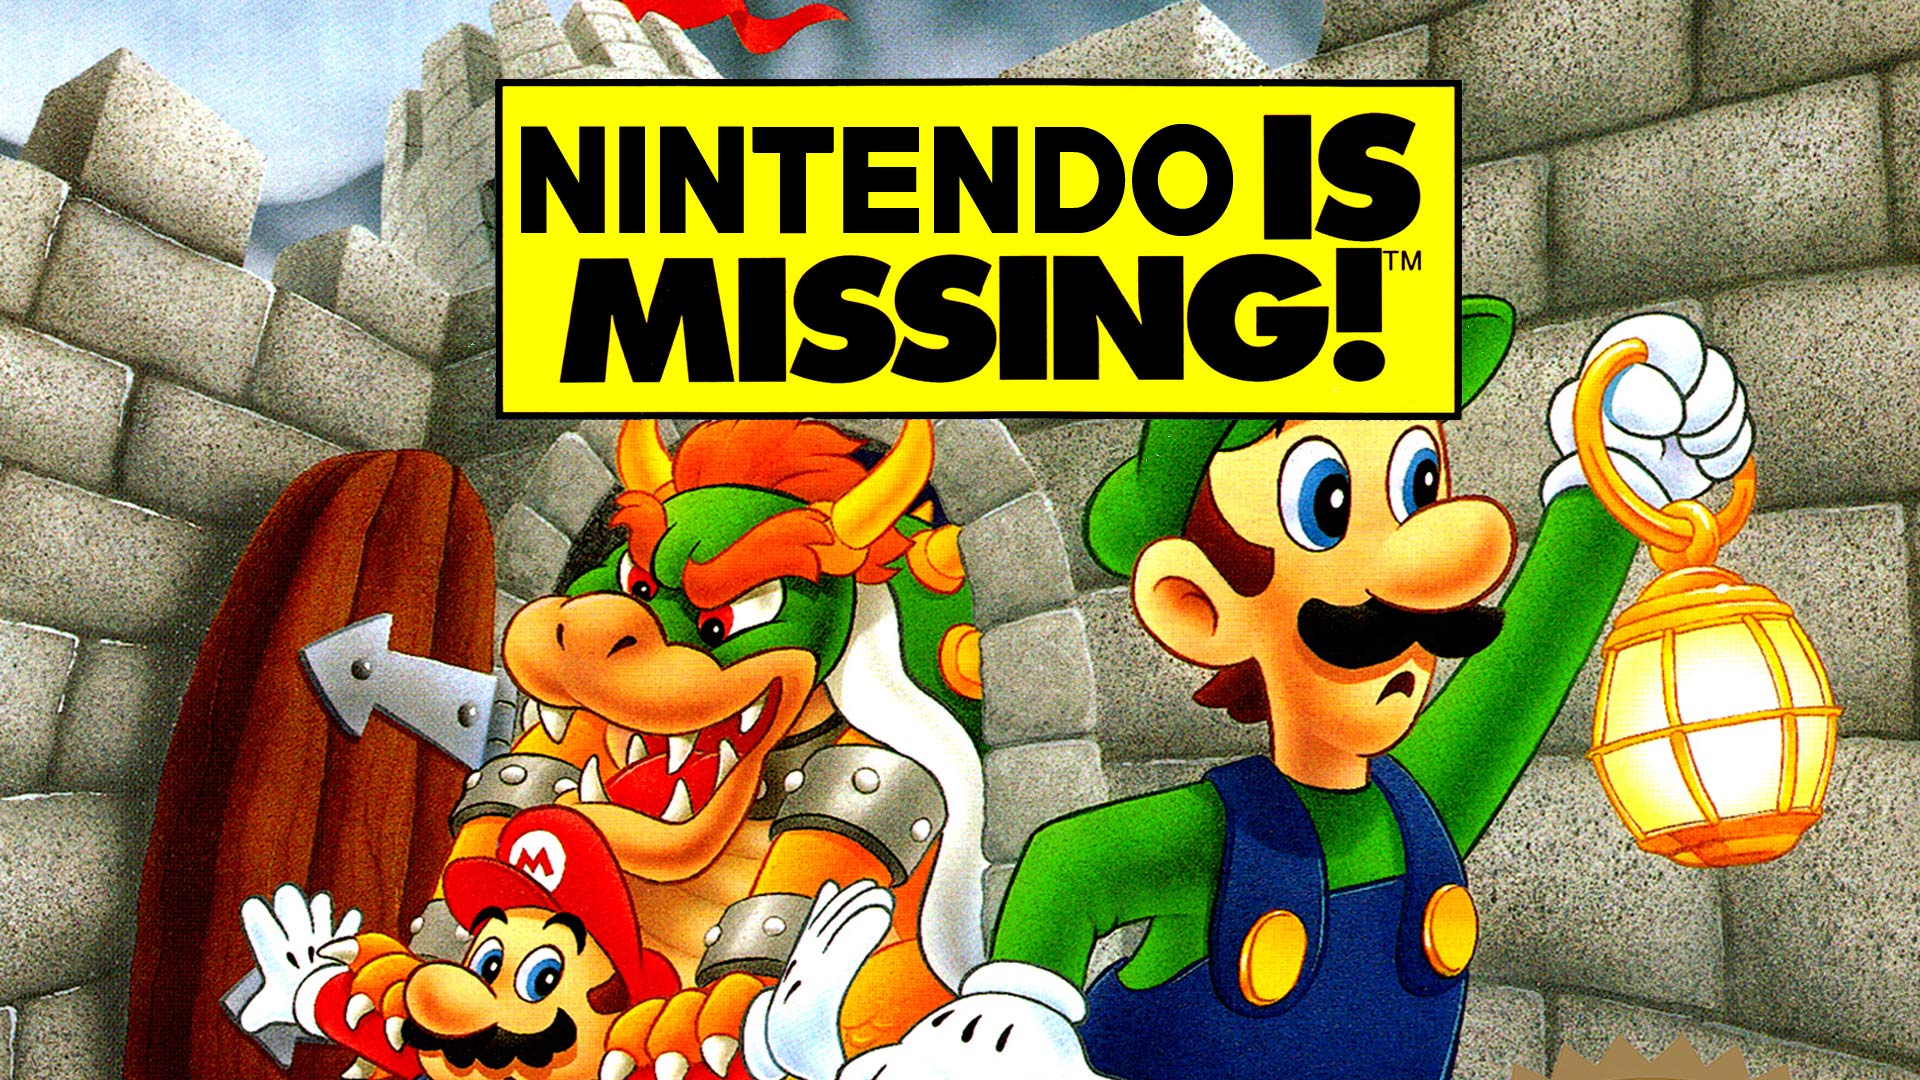 Nintendo is missing